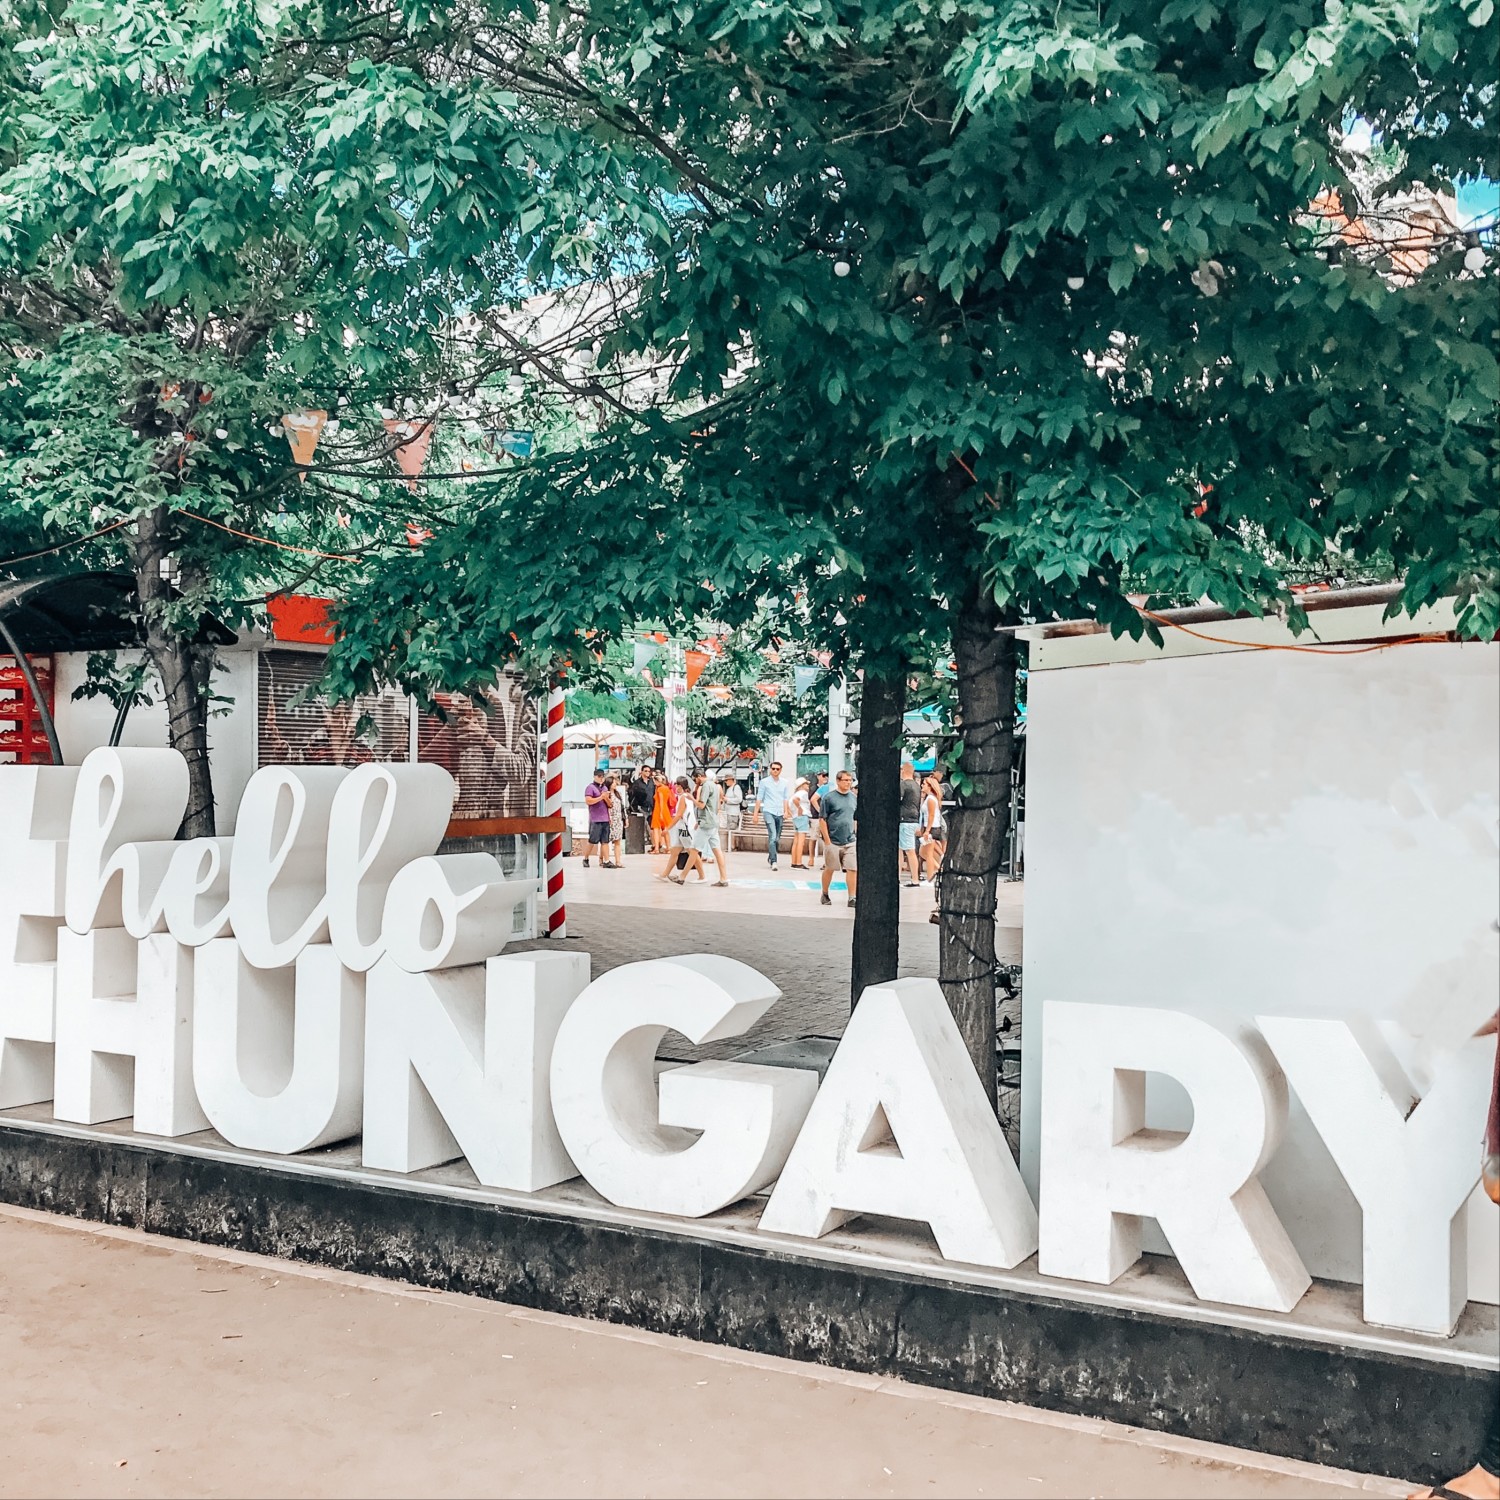 Travel Advisor Katherine Courage took a photo of Hello Hungary signage.